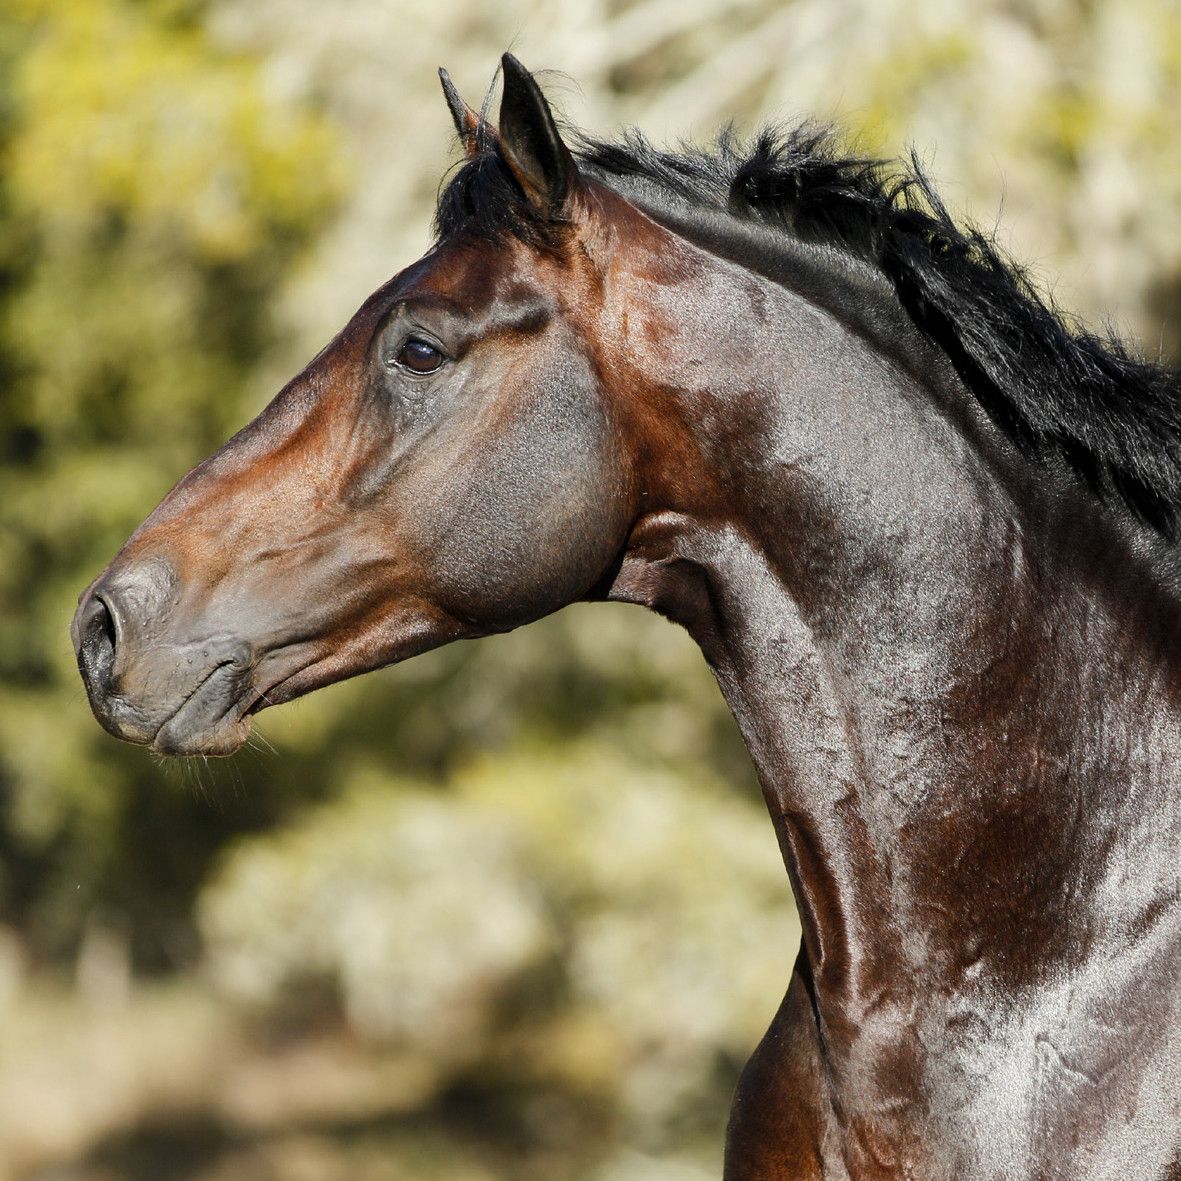 Spanier Pferde Kaufen Kostenlos Herunterladen - Spanier Pferde Kaufen Kostenlos Herunterladen